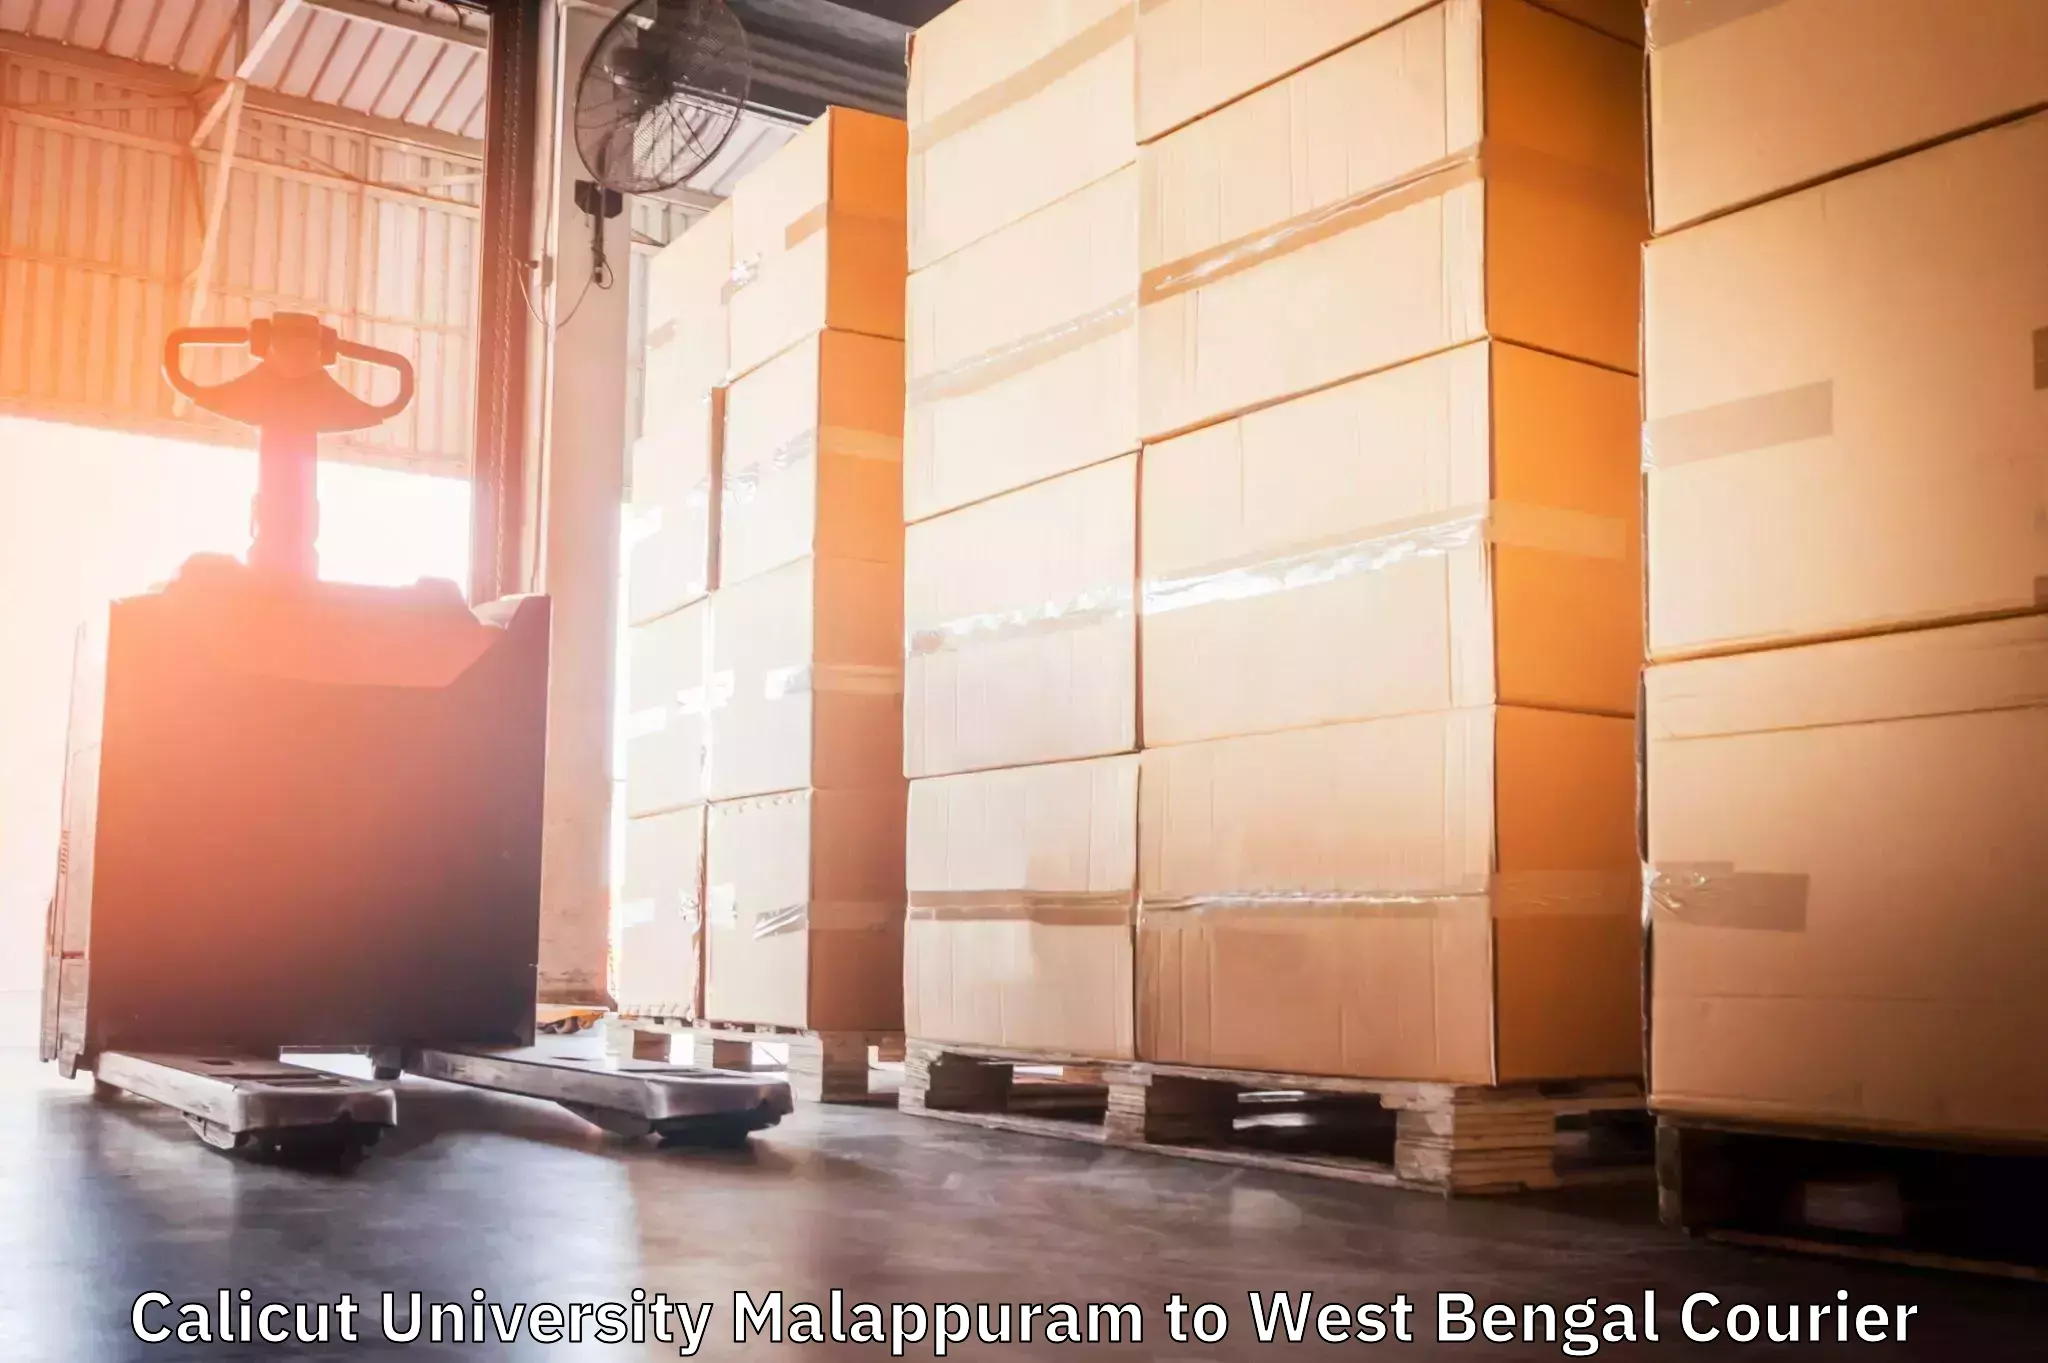 Door-to-door freight service Calicut University Malappuram to Rampurhat